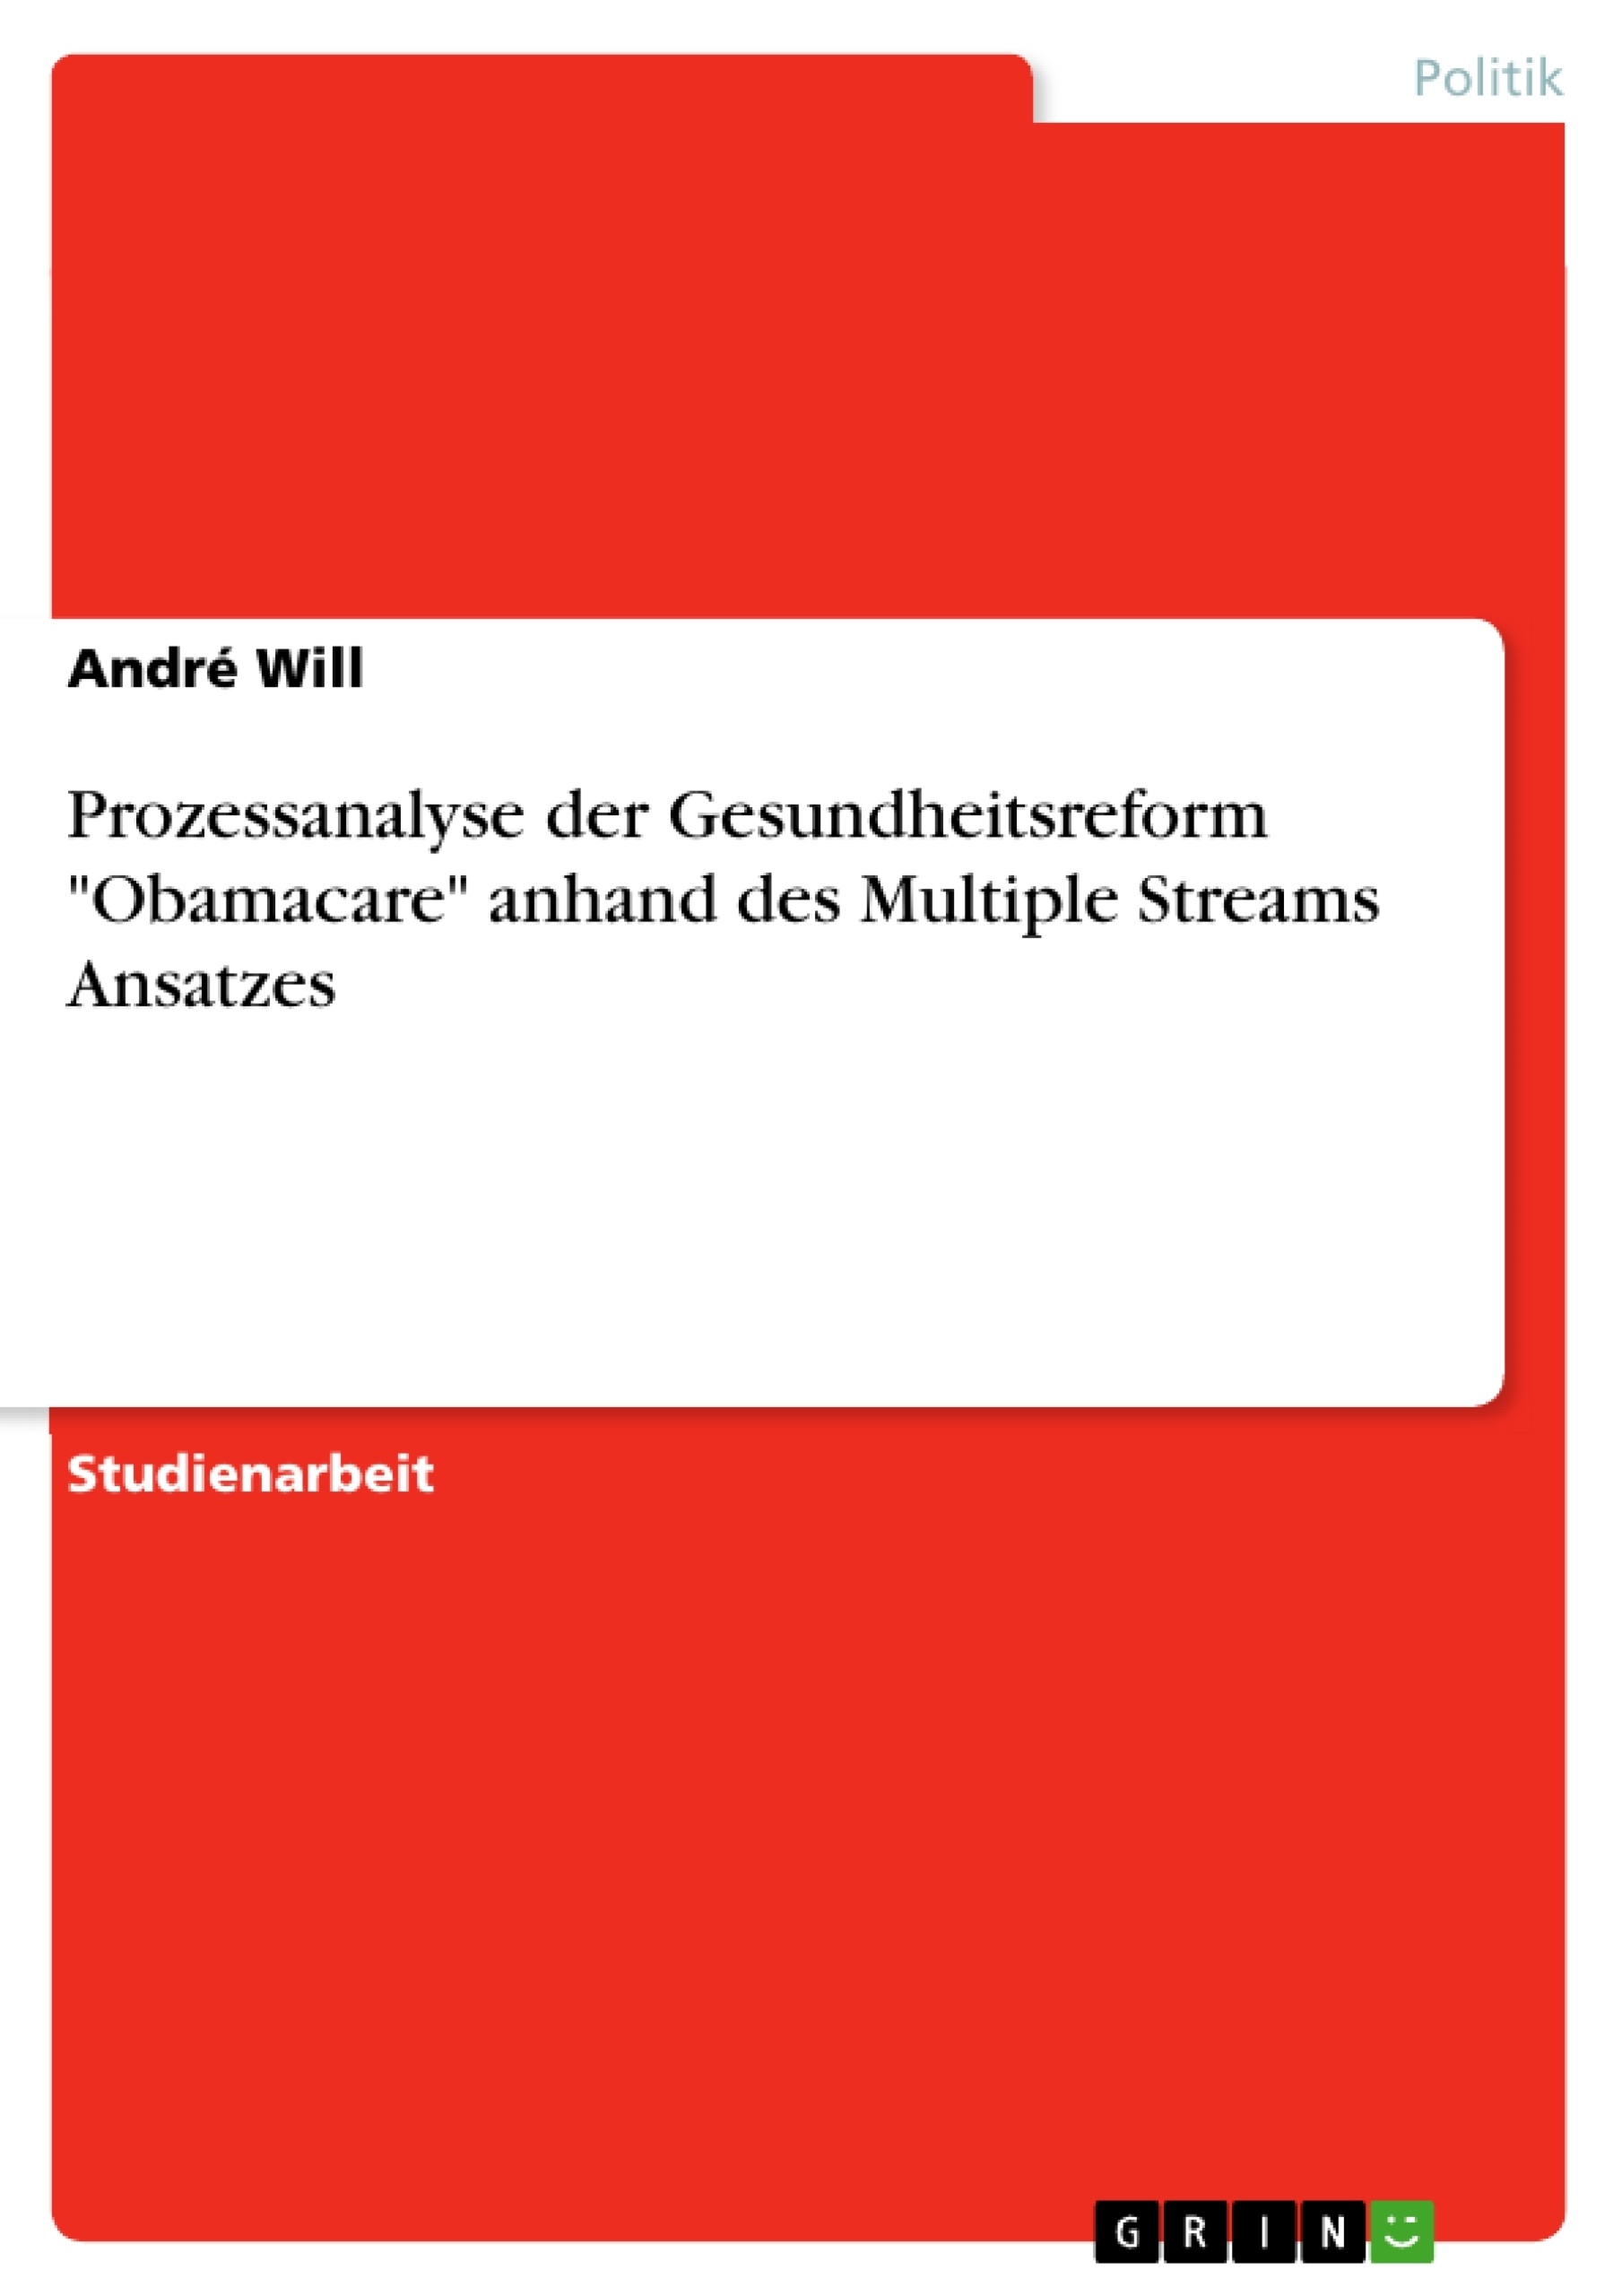 Titre: Prozessanalyse der Gesundheitsreform "Obamacare" anhand des Multiple Streams Ansatzes